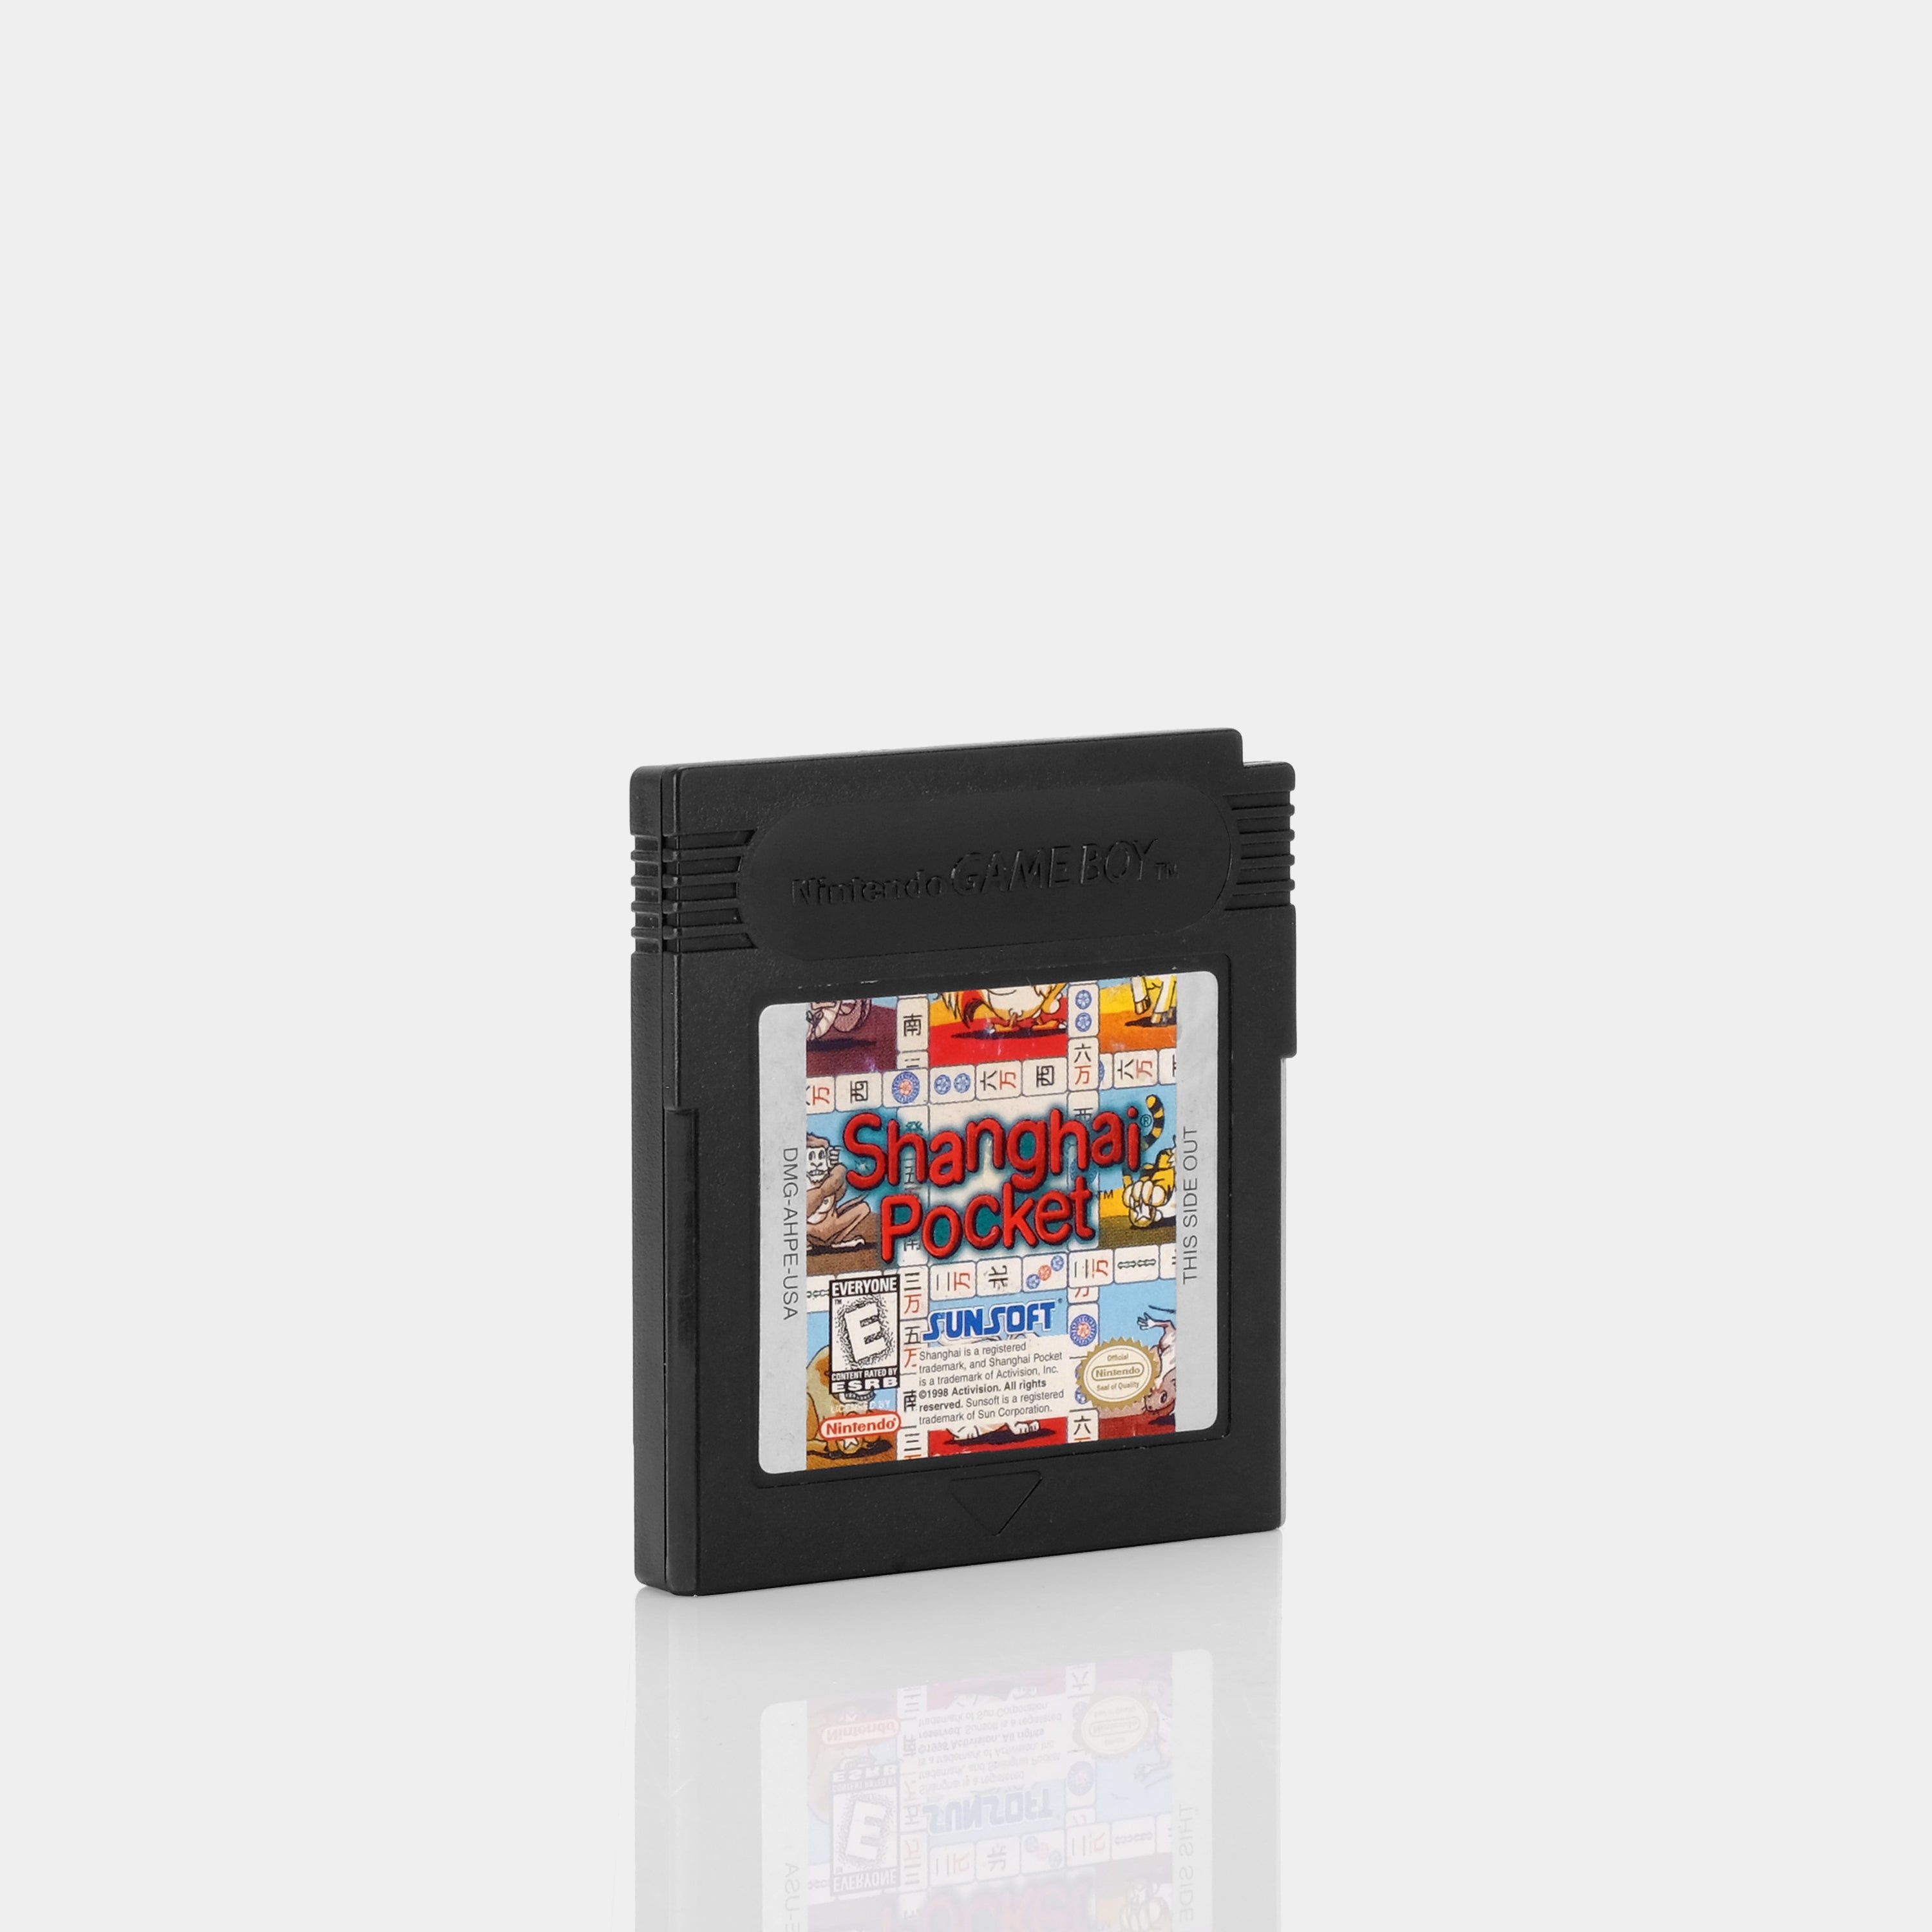 Shanghai Pocket Game Boy Color Game